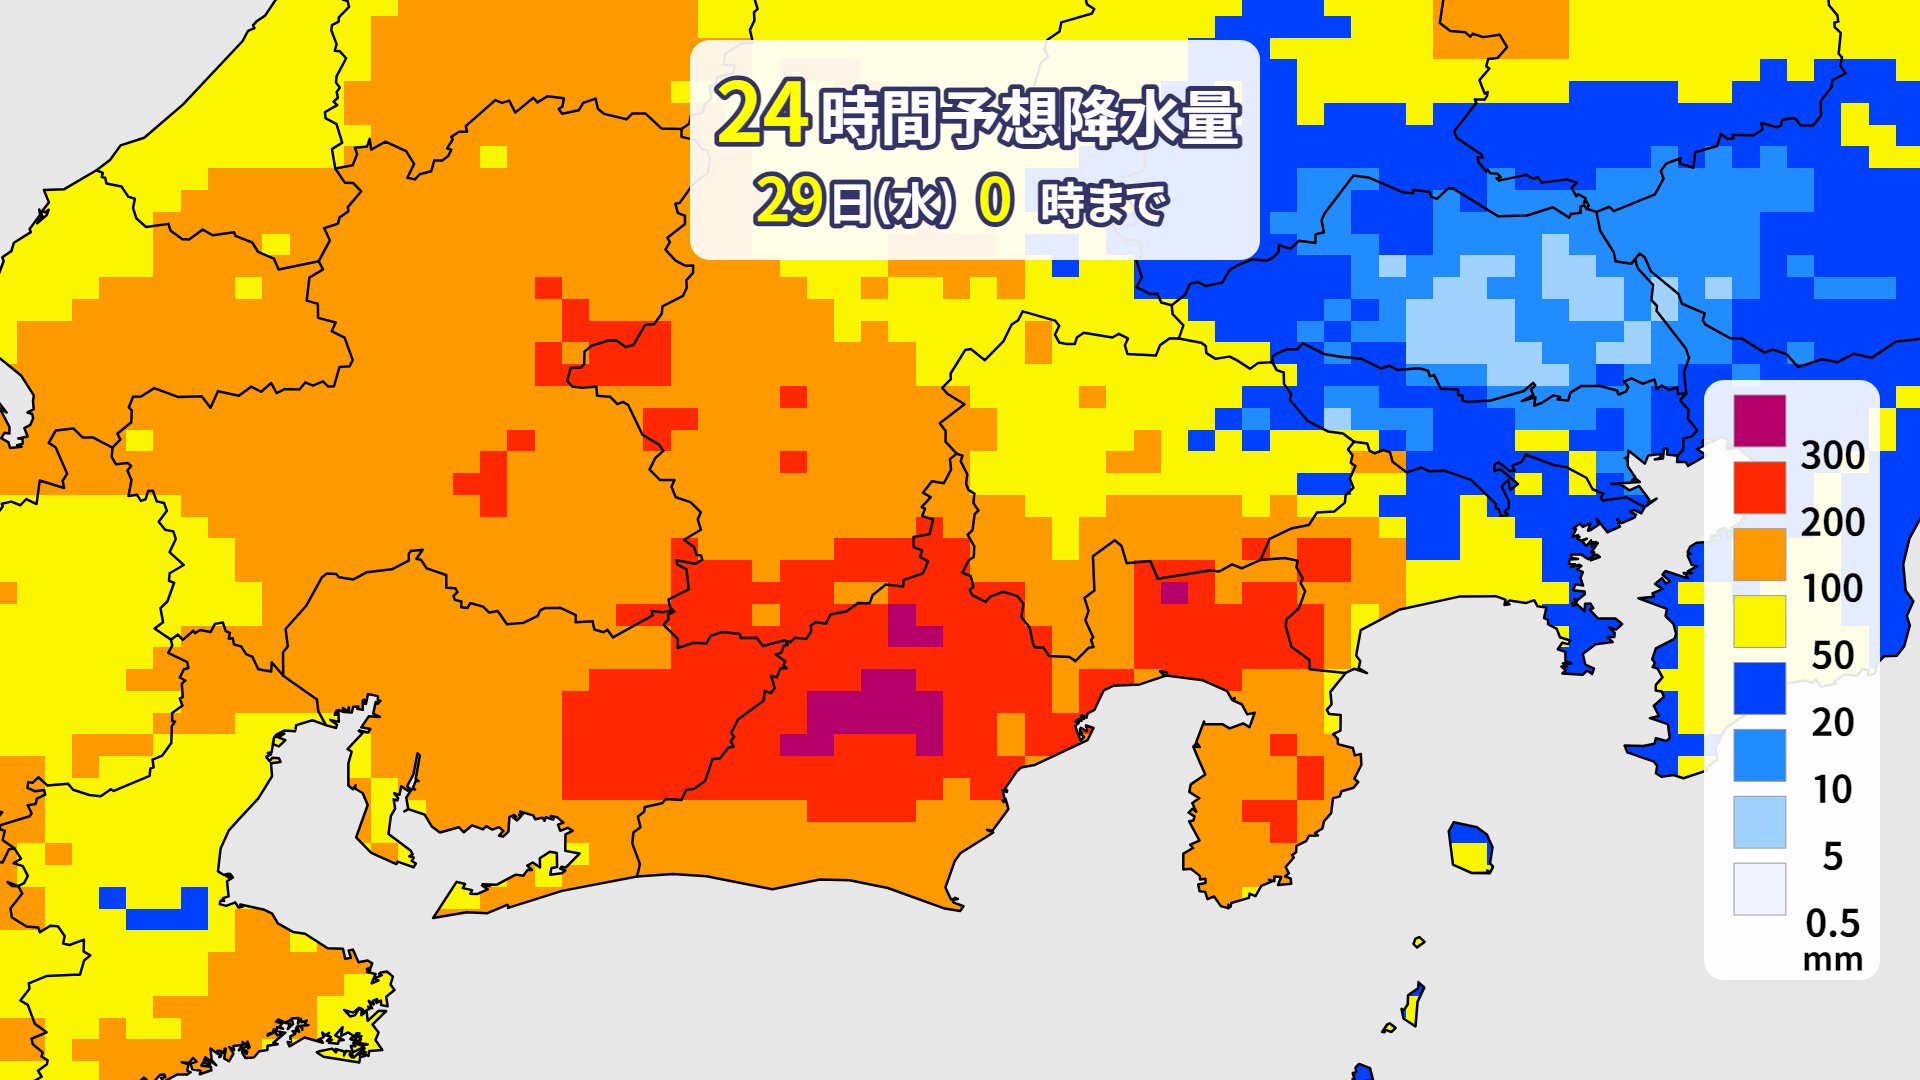 29日午前0時にかけての24時間予想雨量（提供：ウェザーマップ）